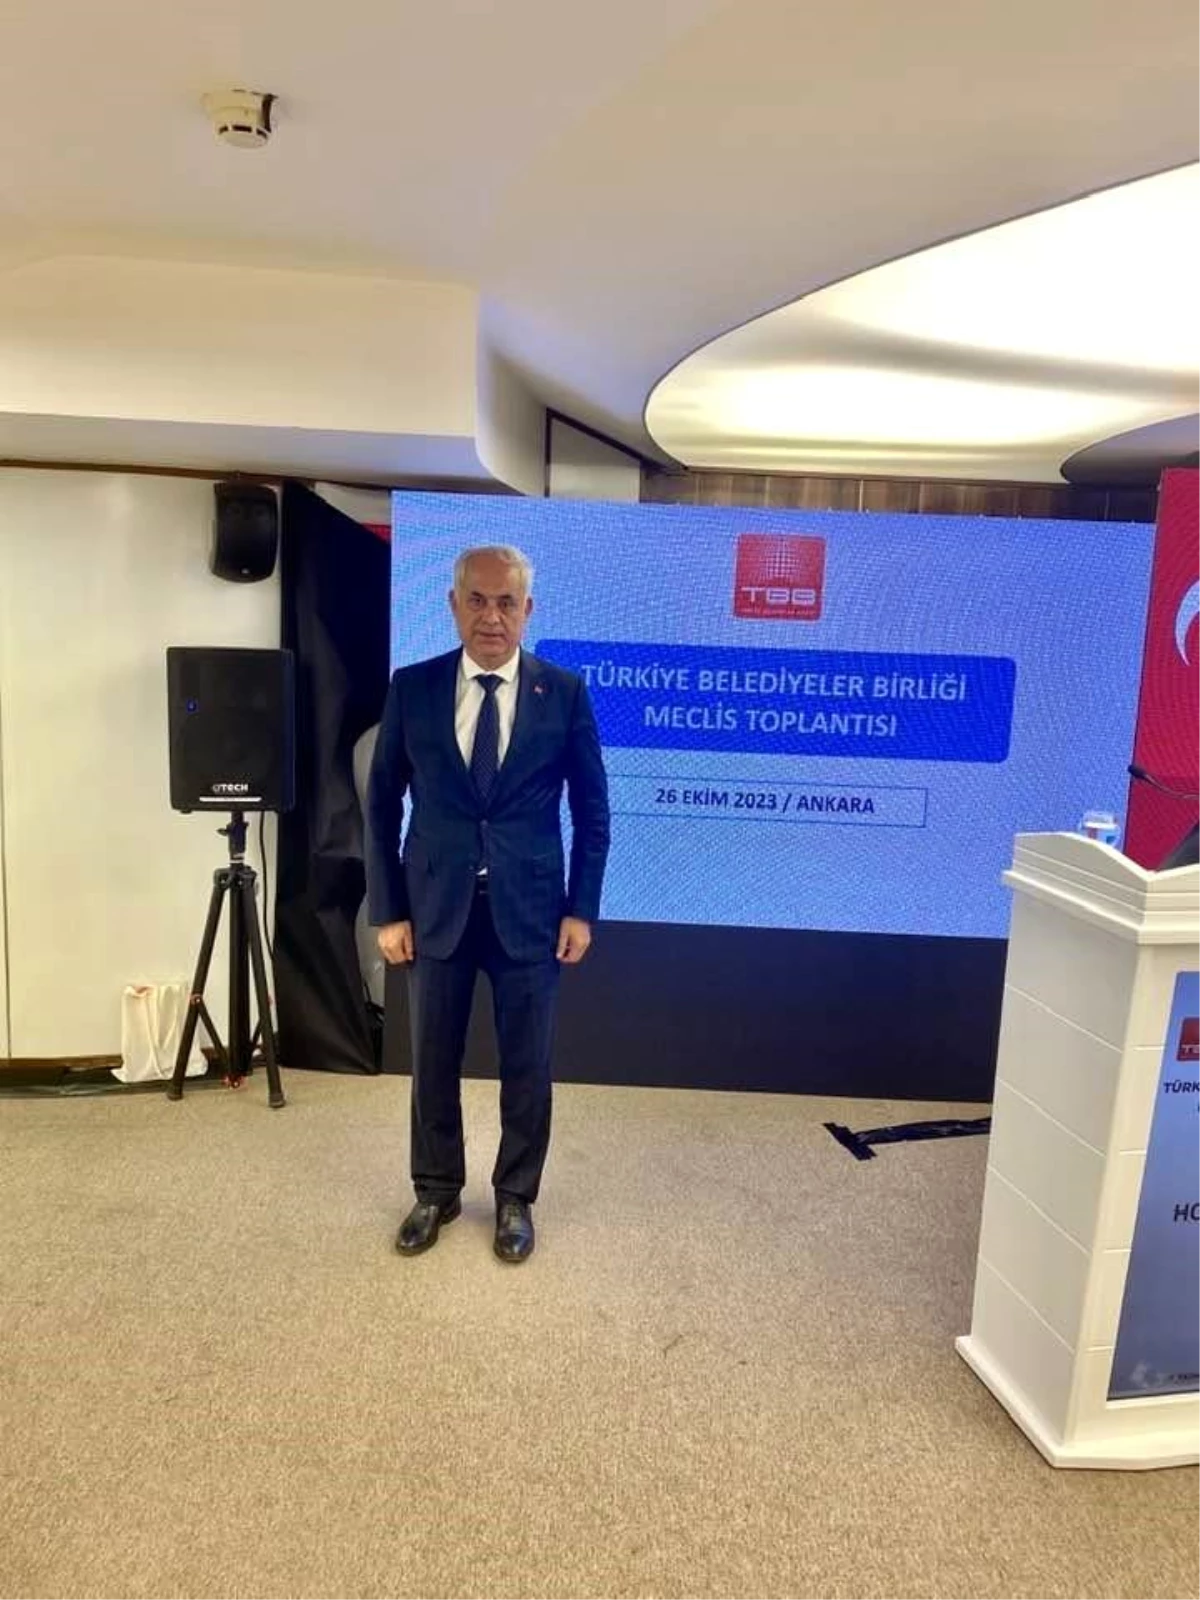 Bilecik Belediyeler Birliği Başkanı Mustafa Yaman, Türkiye Belediyeler Birliği toplantısına katıldı